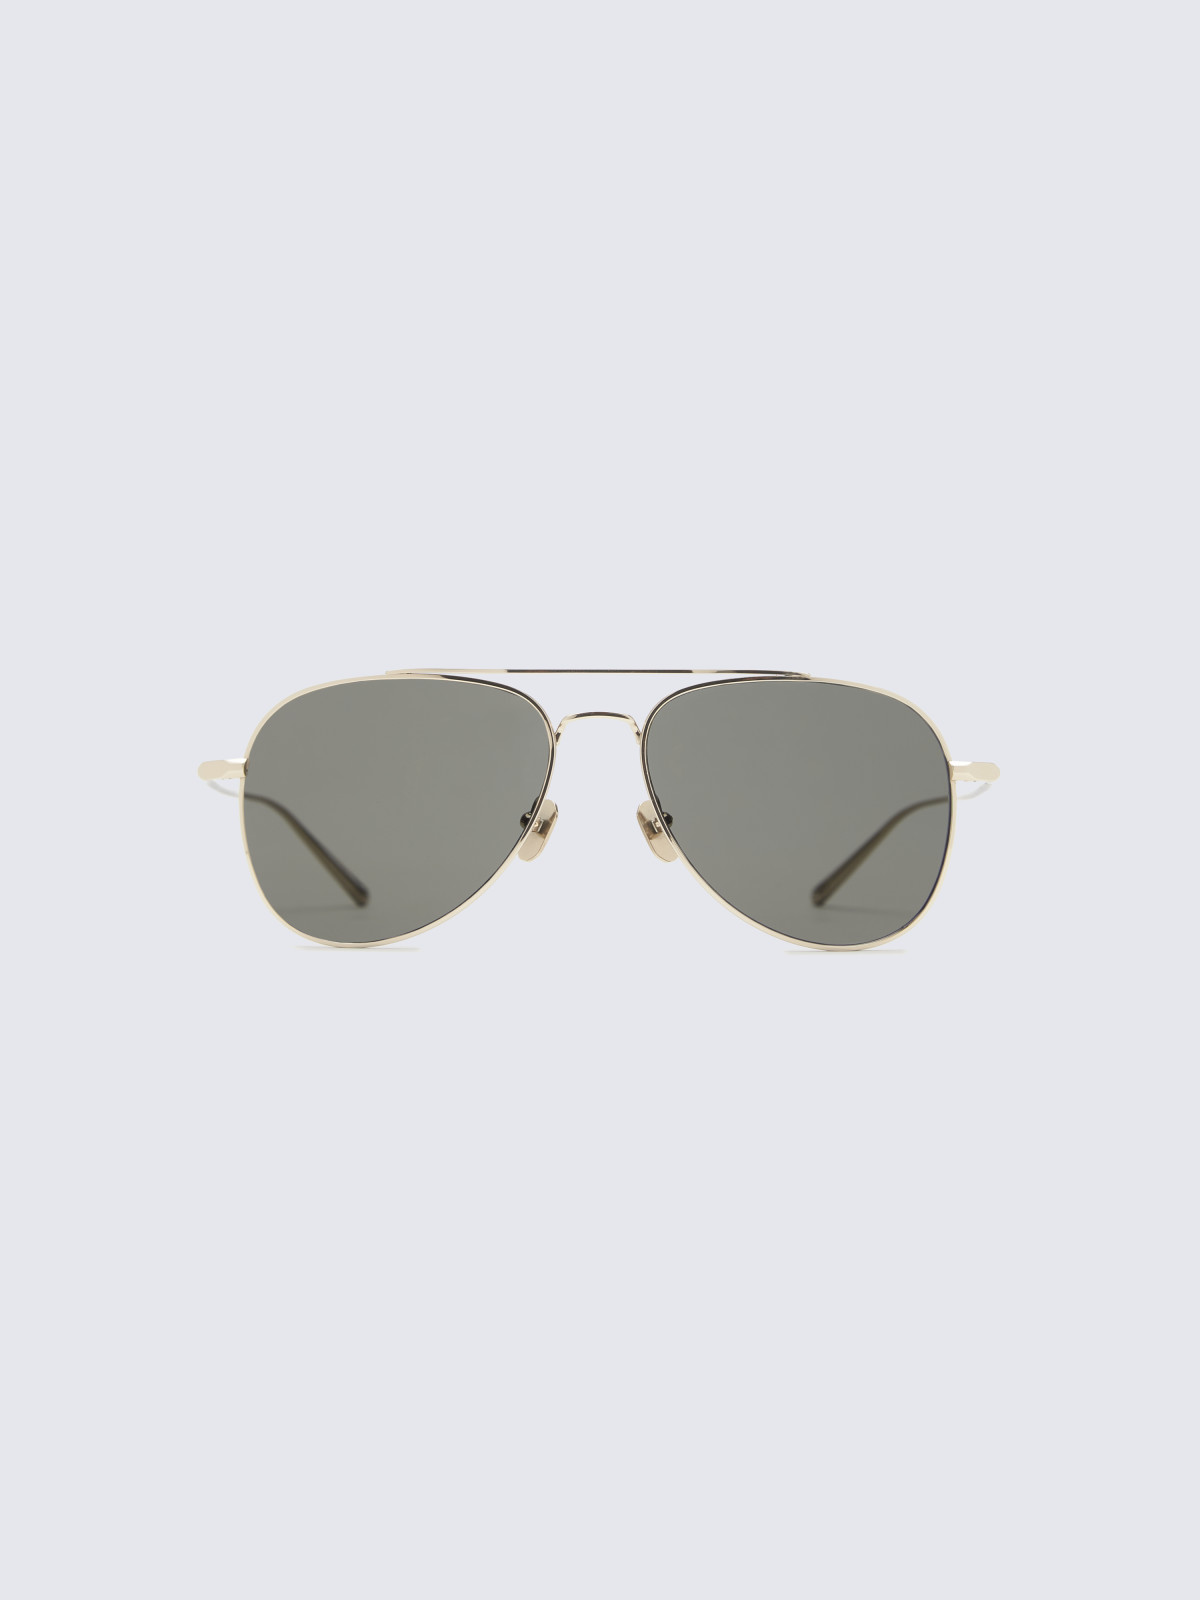 Titanium gold and dark grey double bridge sunglasses | Brioni® US ...